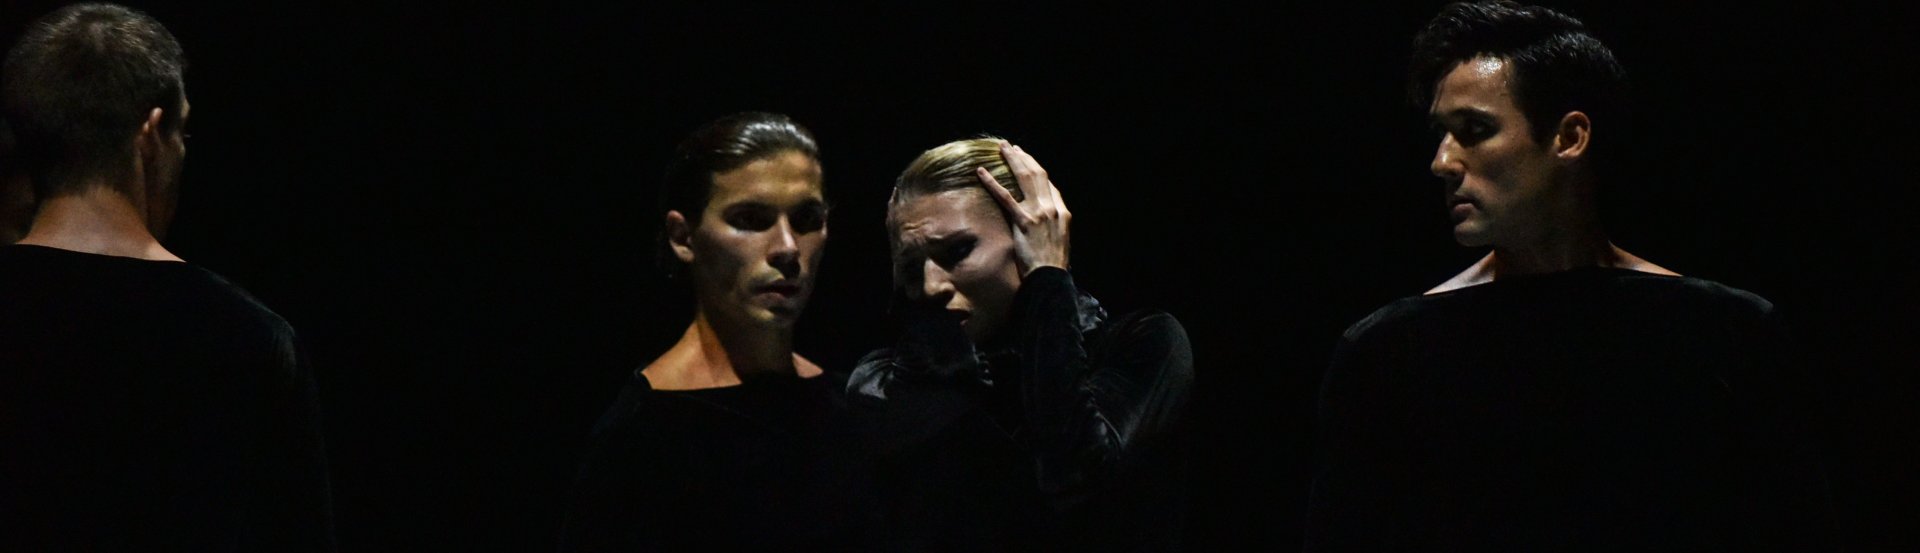 Győri Balett / Szegedi Kortárs Balett című előadás kiemelt képe a Pécsi Nemzeti Színházból